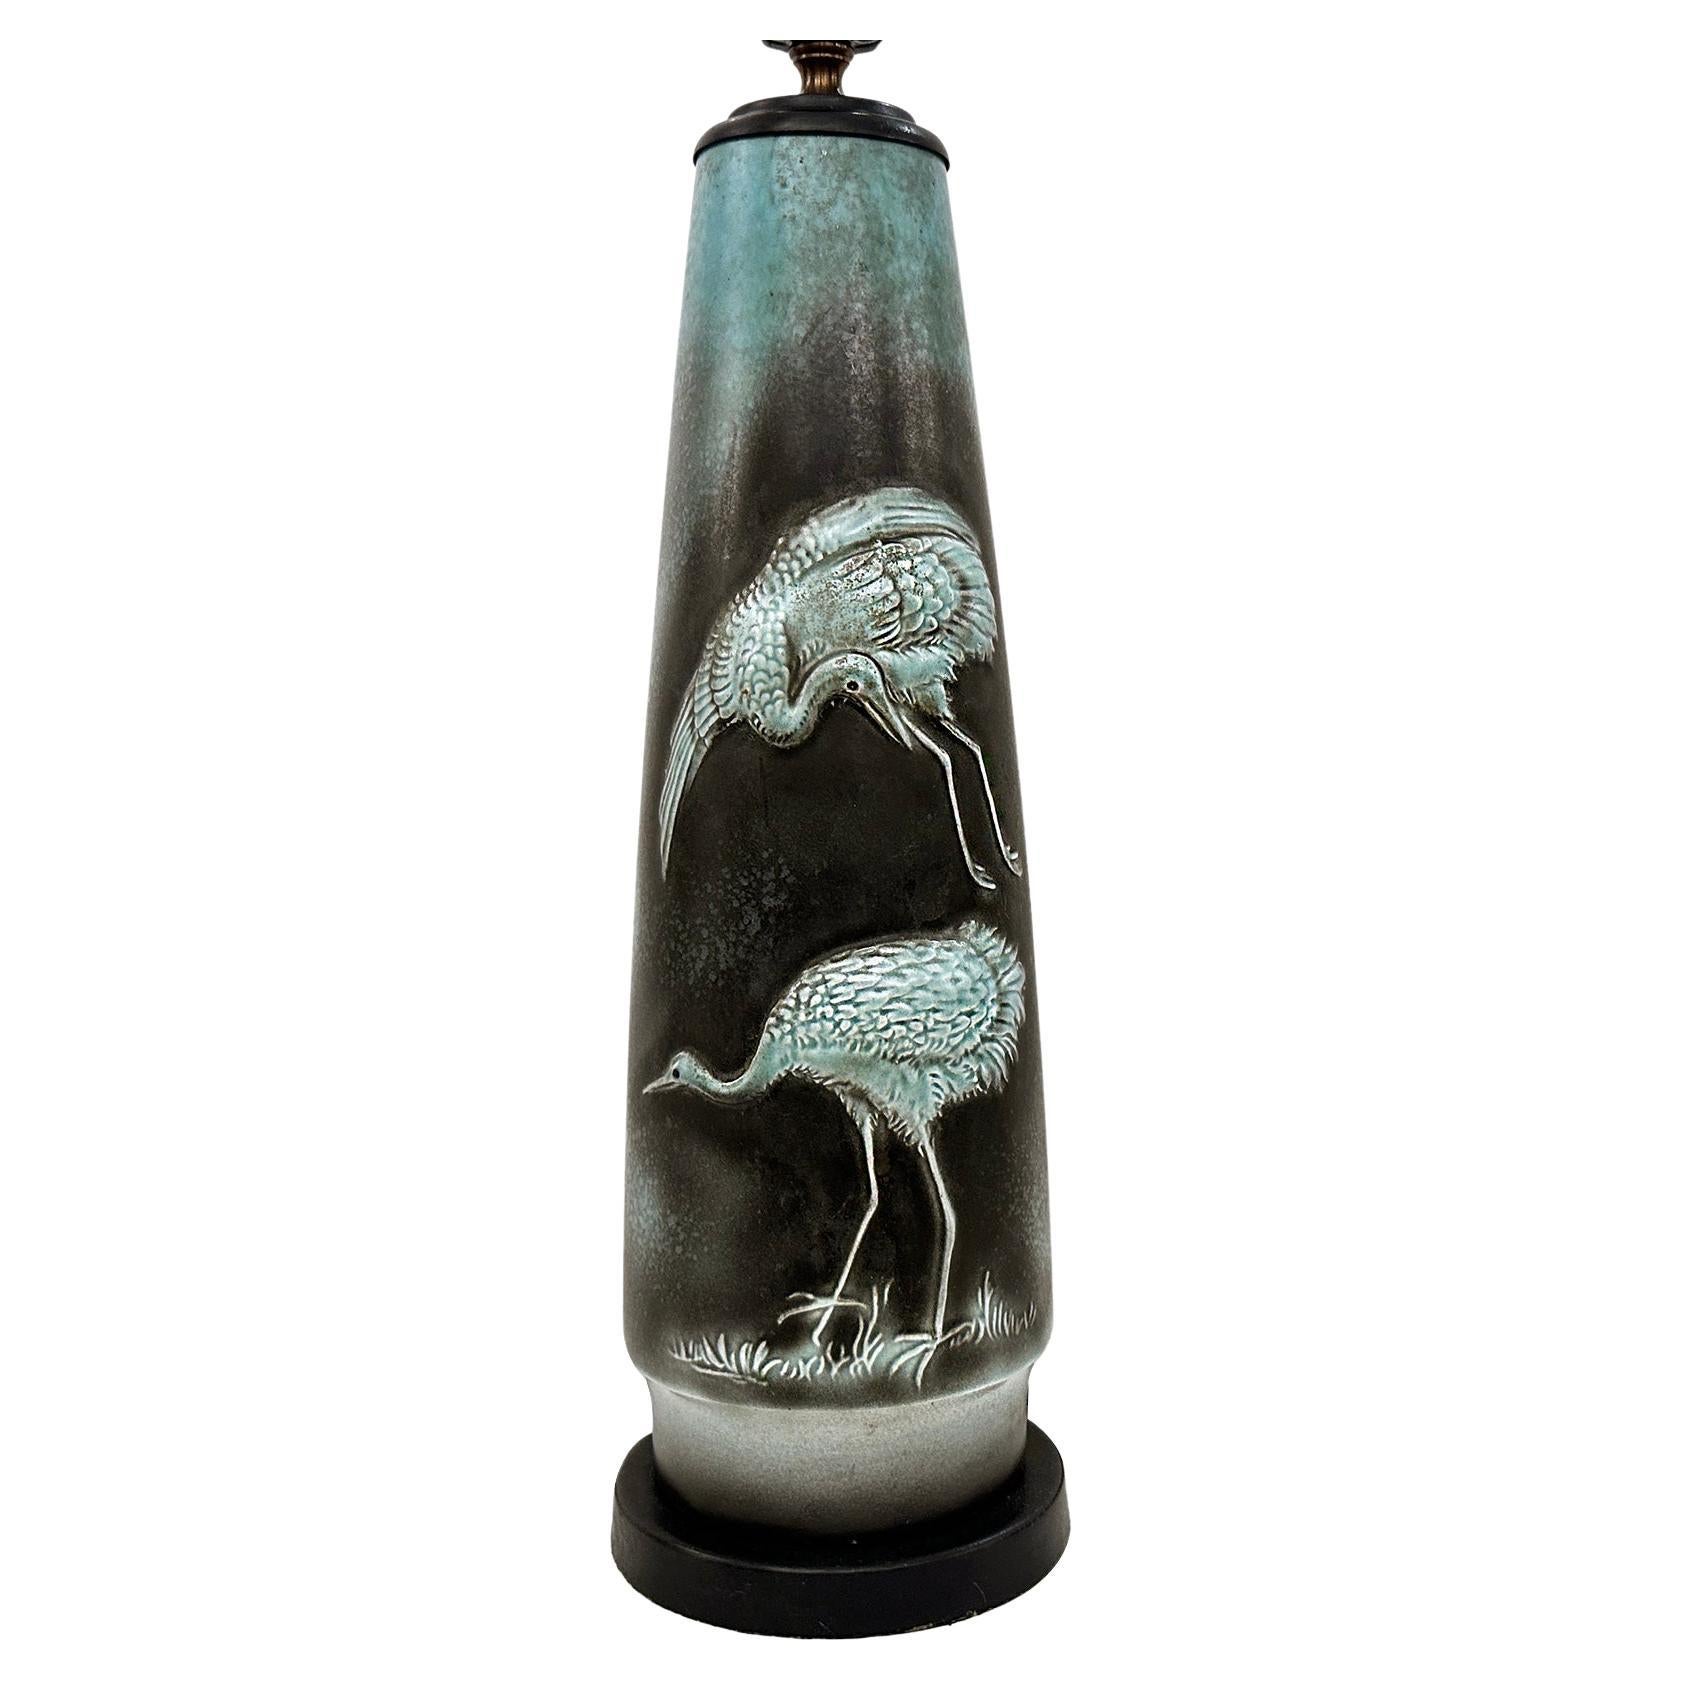 Lampe en métal émaillé à motif d'oiseaux, datant des années 1950.

Mesures :
Hauteur du corps : 17